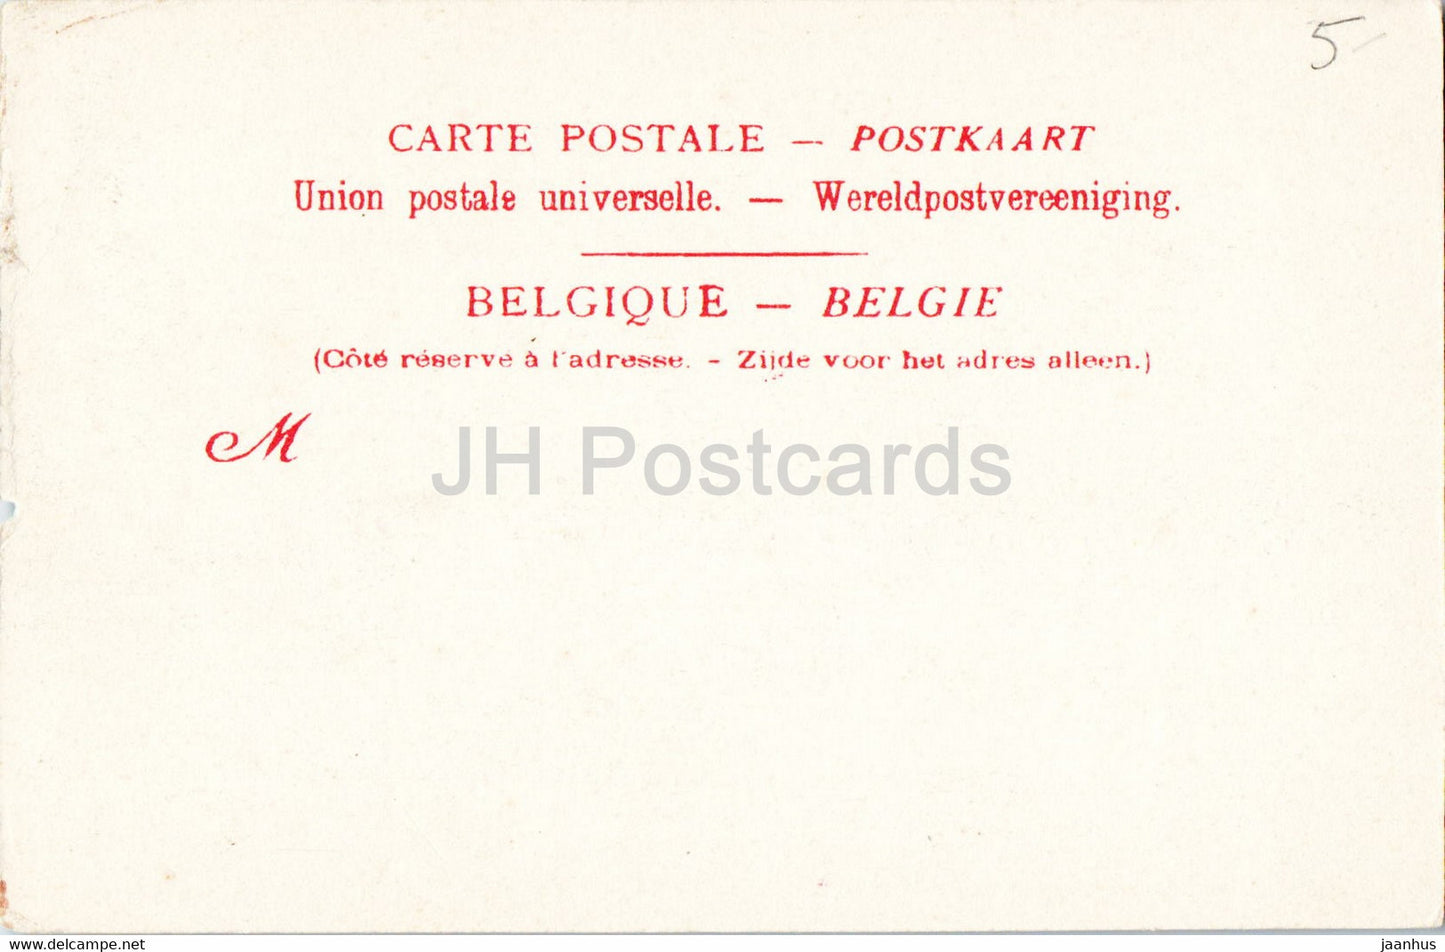 Gand - Gent - Le Casino - 21 - old postcard - Belgium - unused